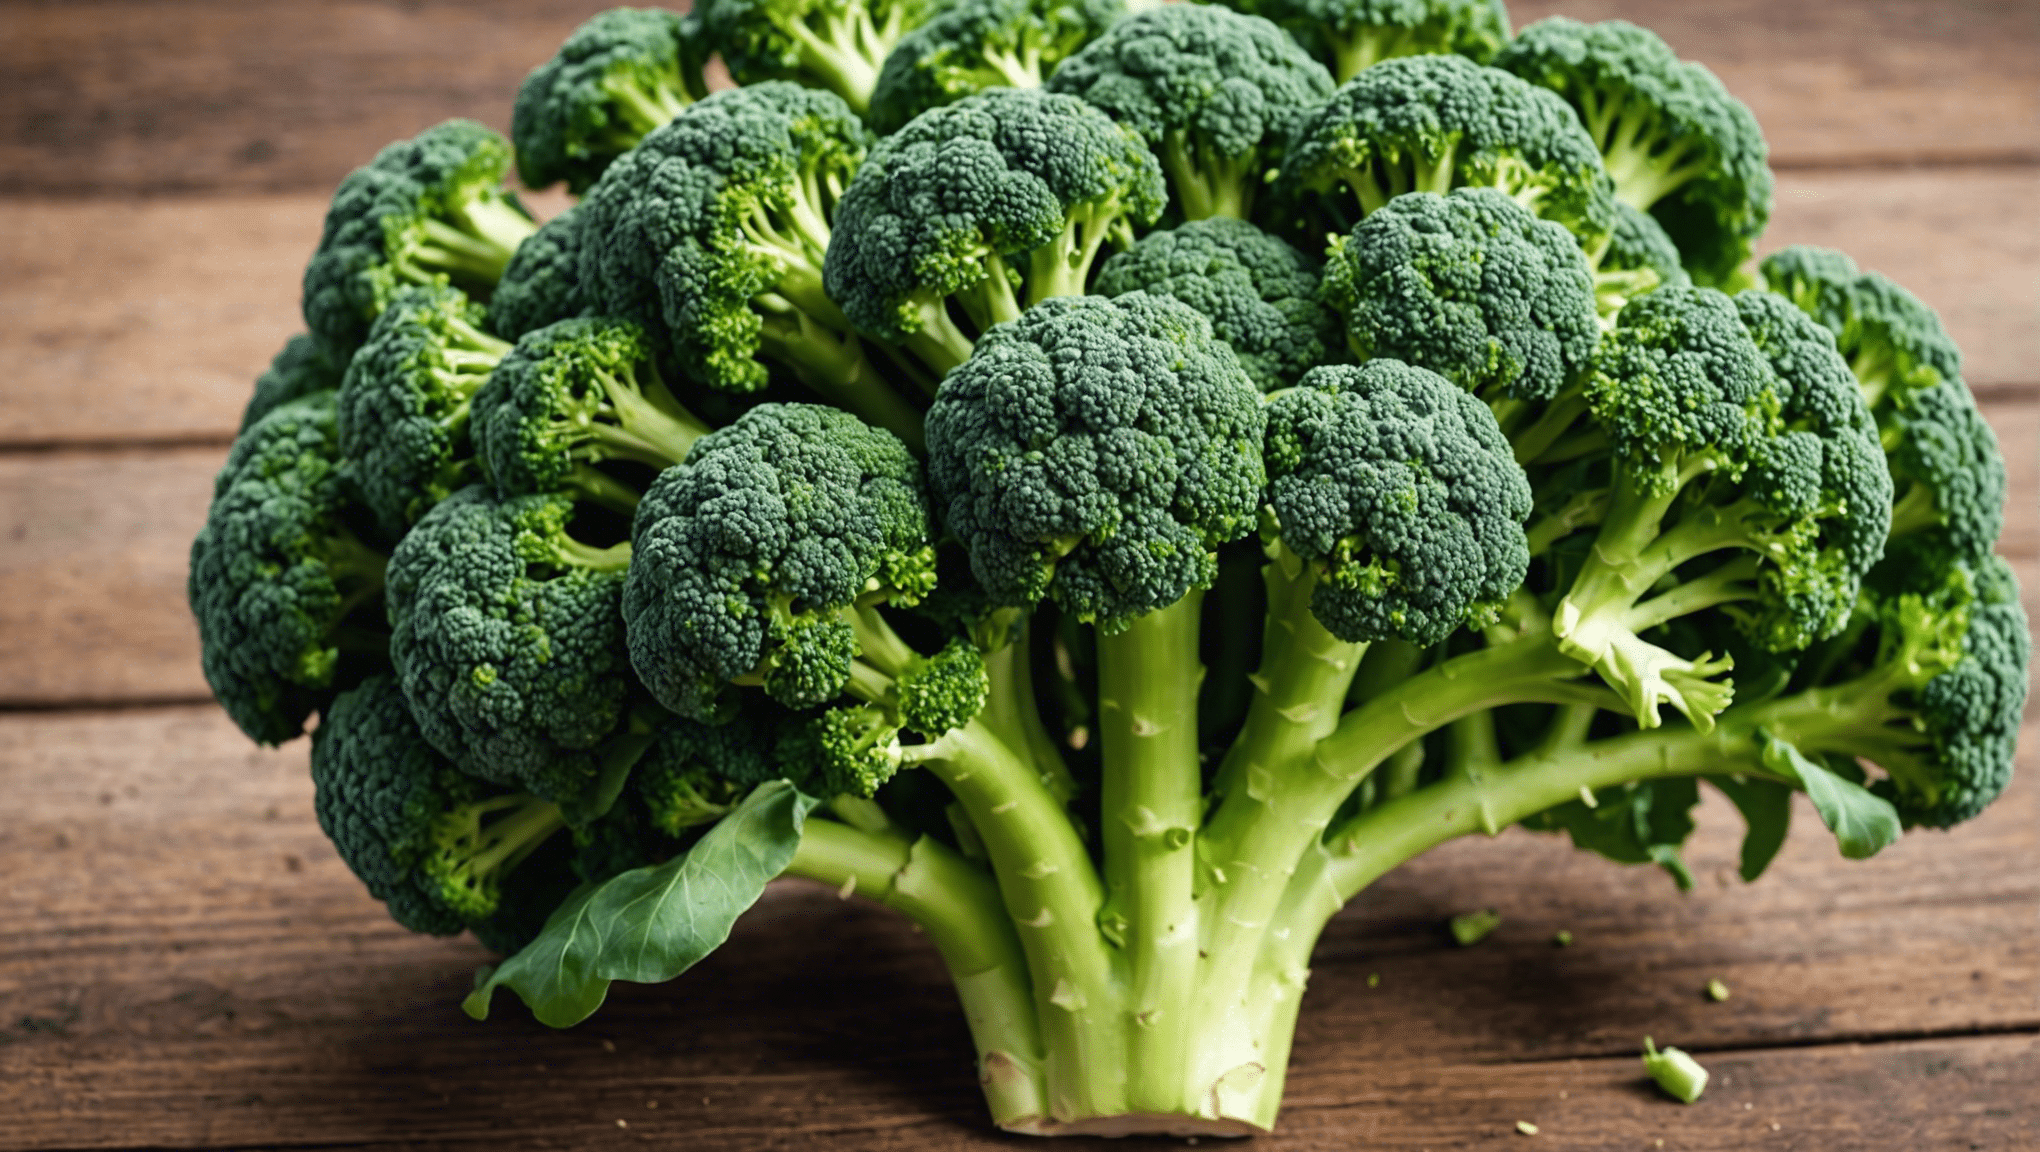 poznaj przyczyny popularności nasion brokułów w trendach zdrowotnych i ich potencjalne korzyści zdrowotne.